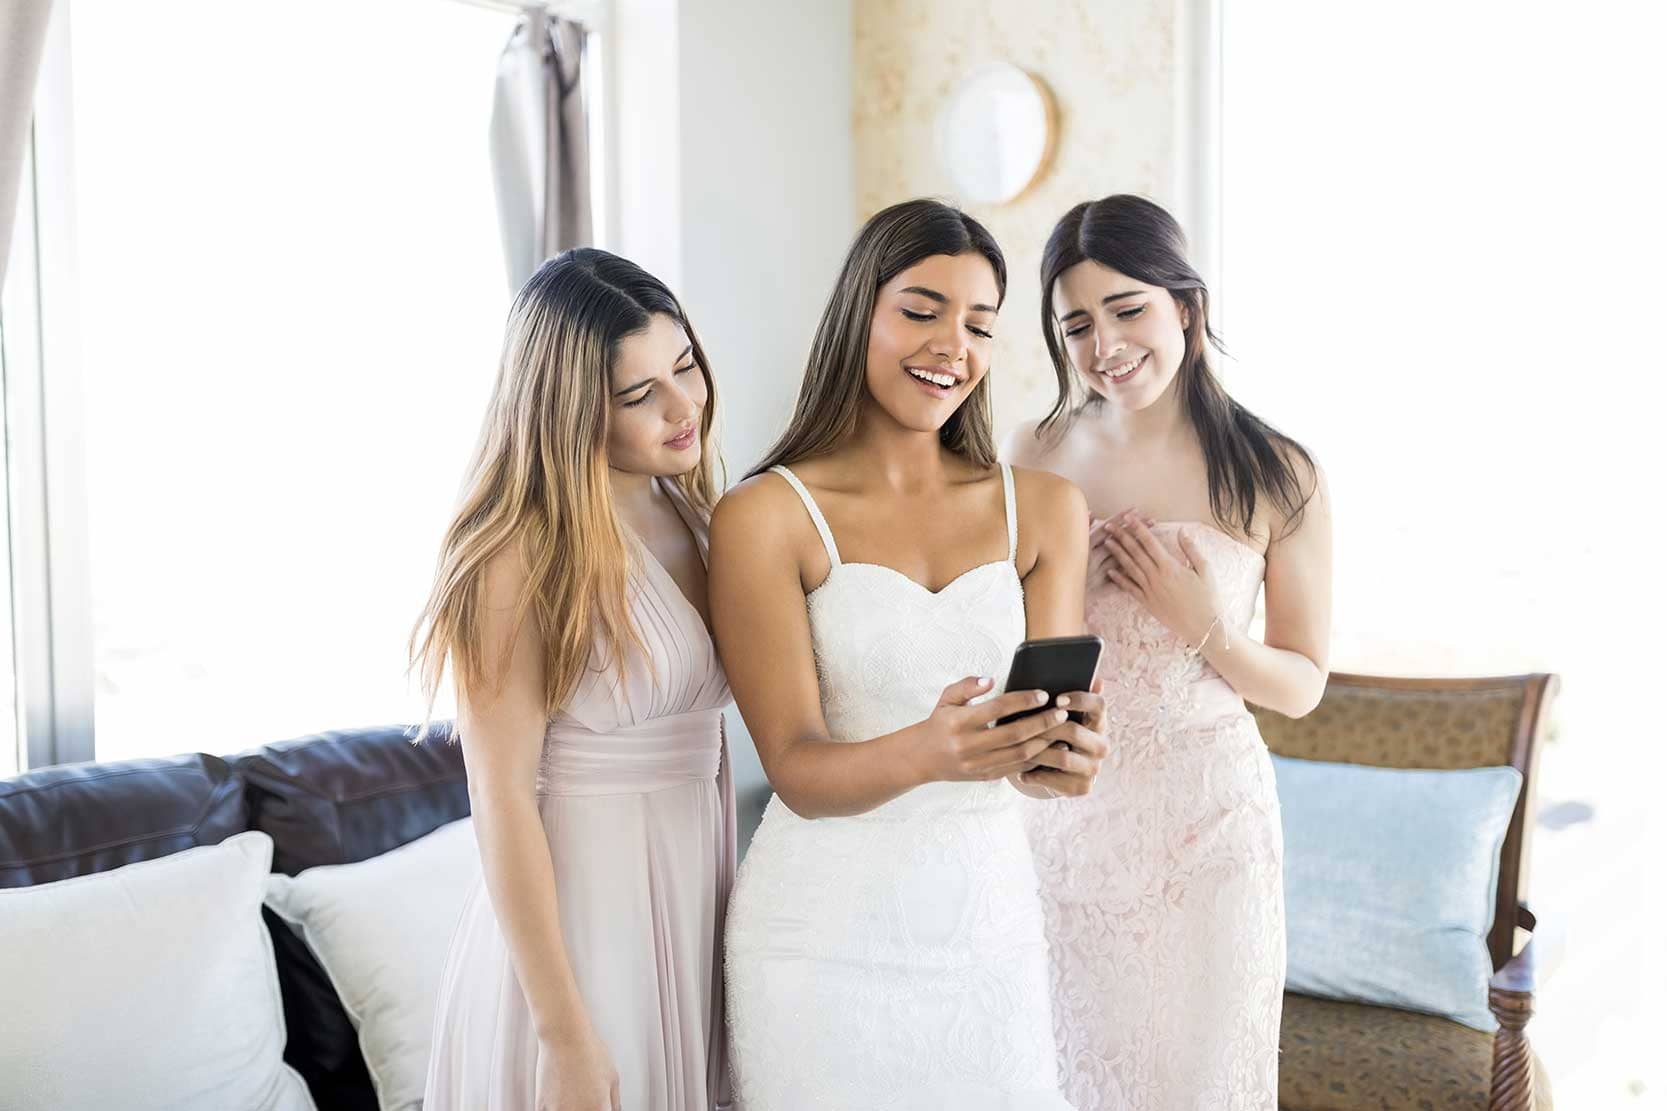 Bridesmaids looking at a smartphone